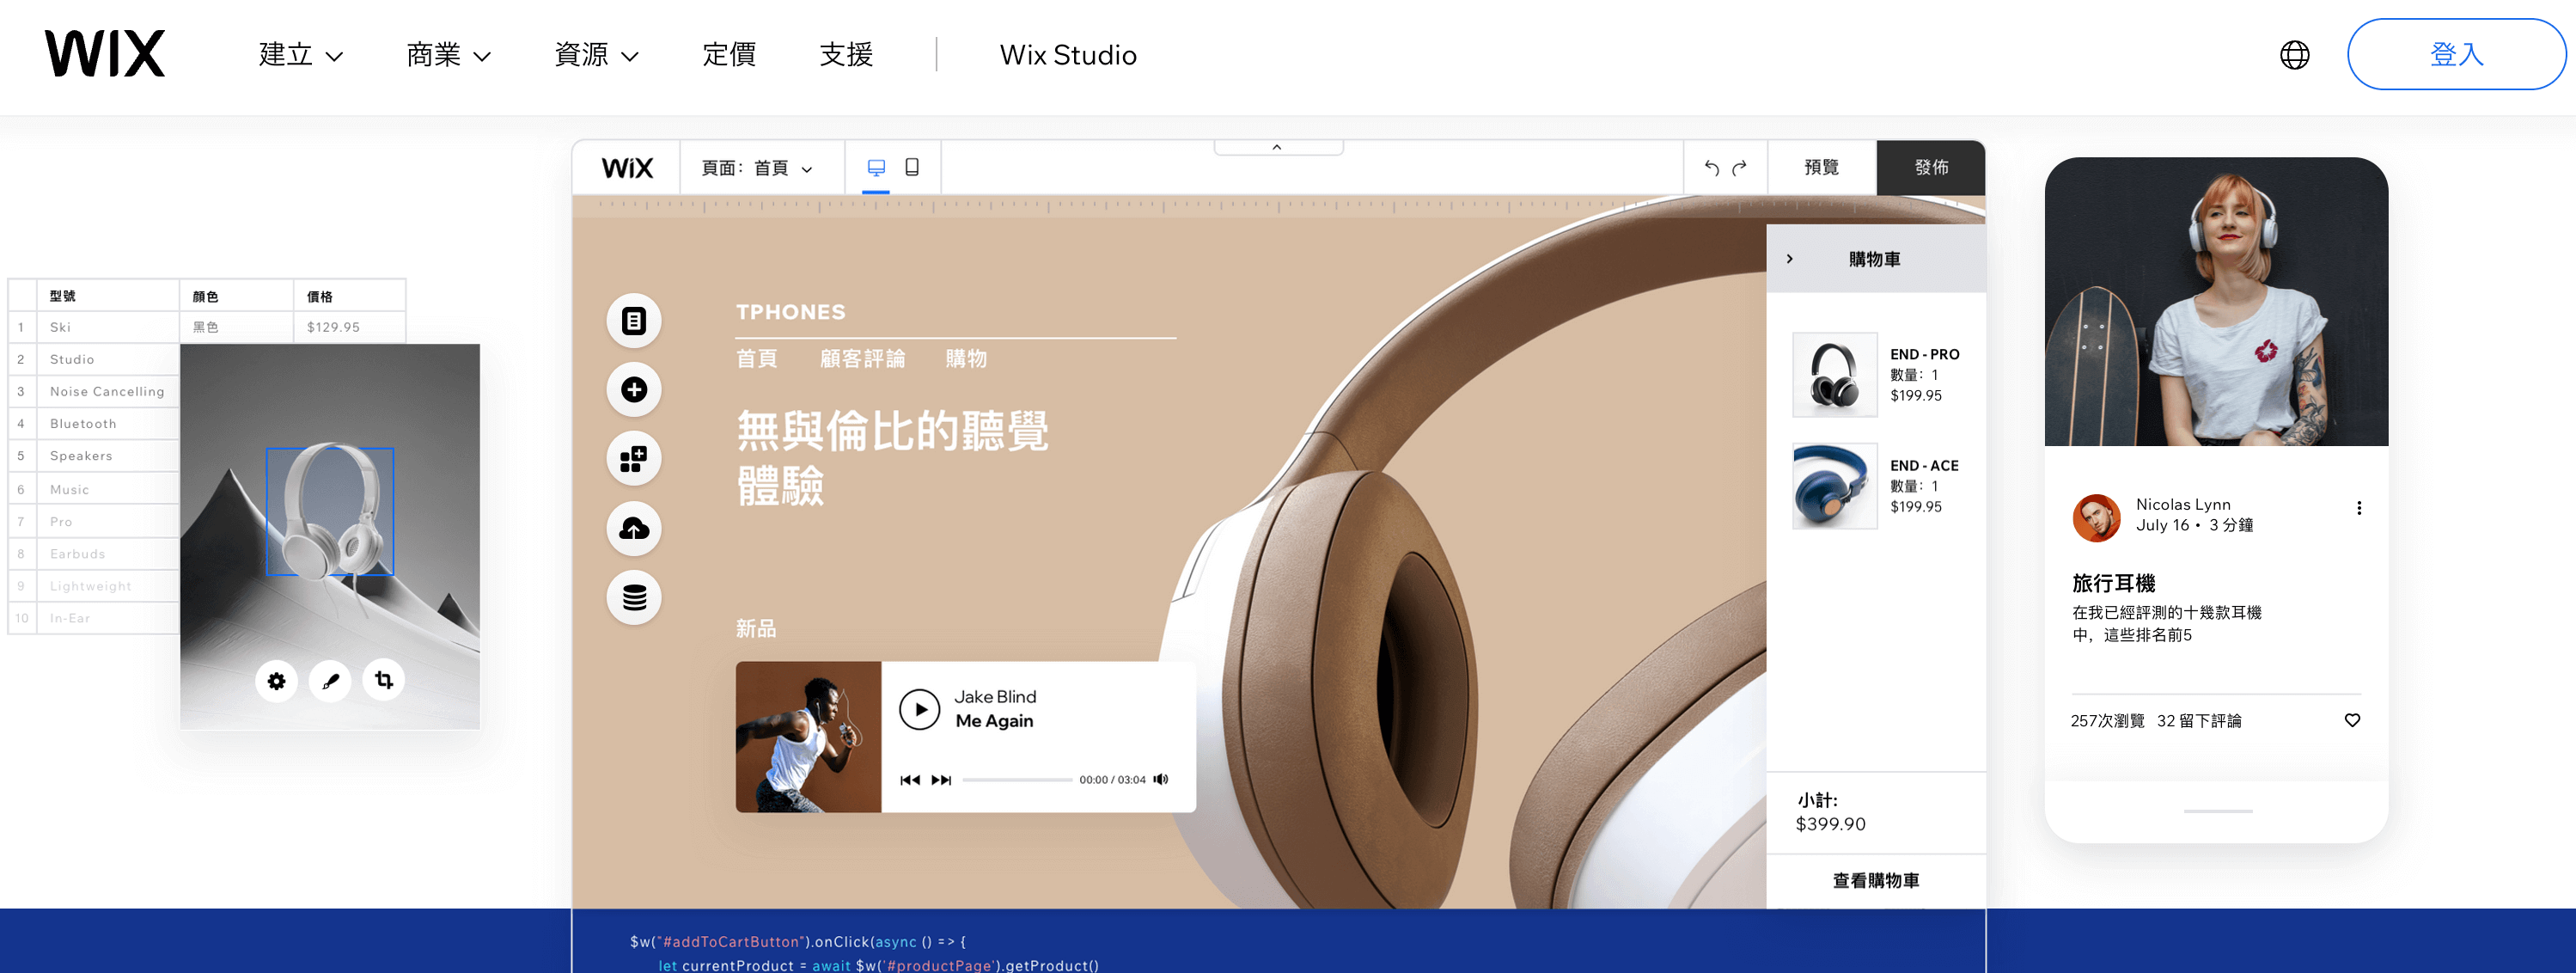 网页设计网站Wix 